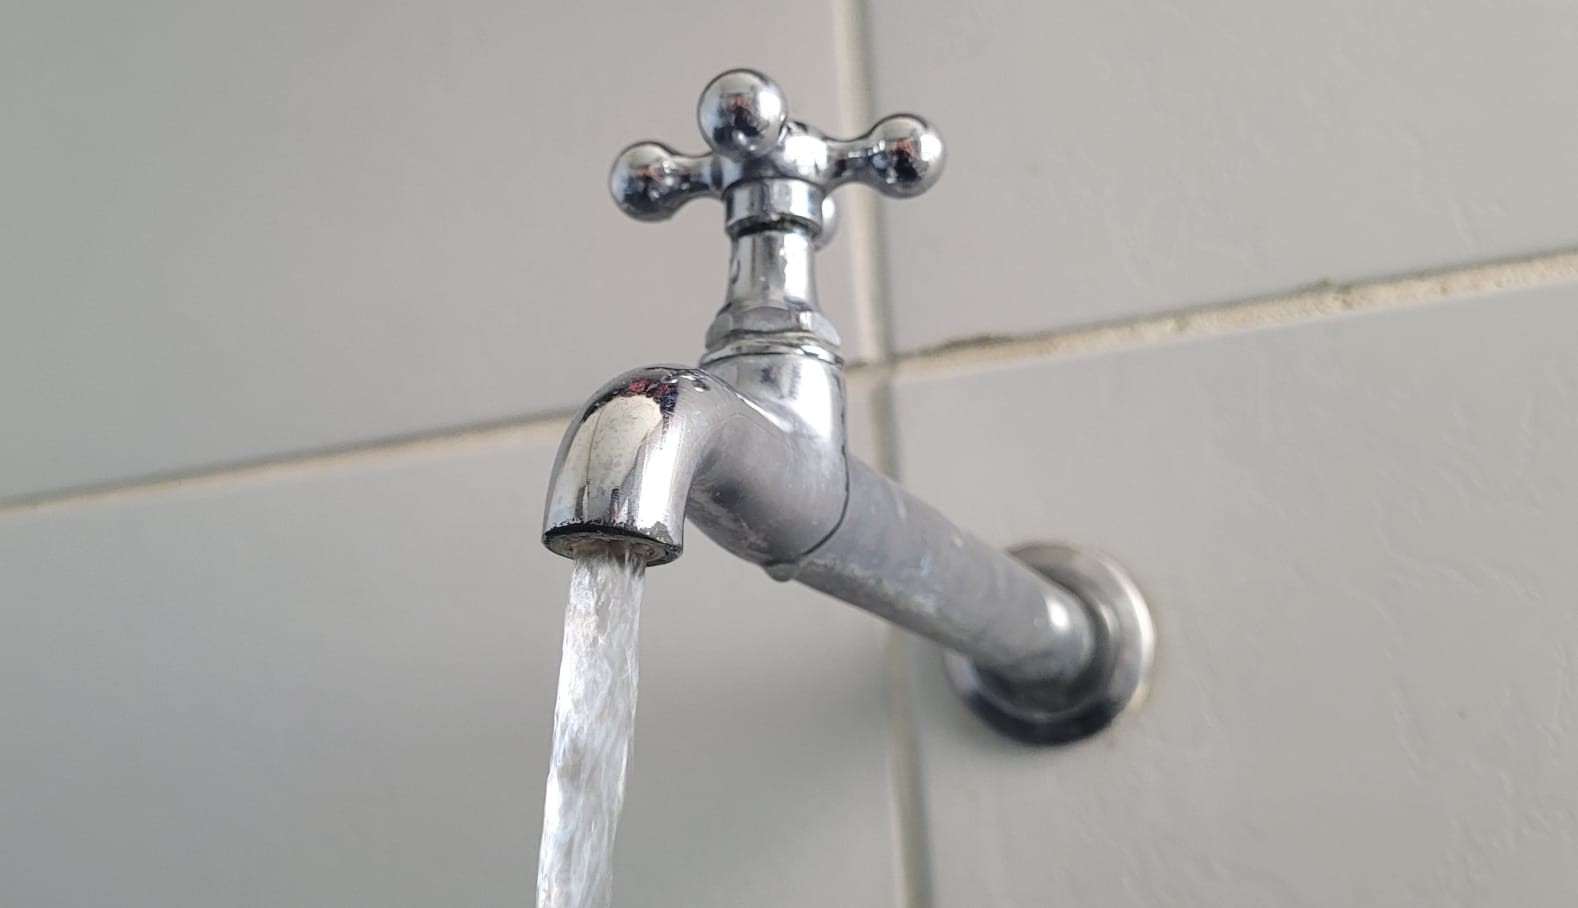 Rompimento de tubulação afeta abastecimento de água em bairros de Curitiba nesta segunda (29); veja quais